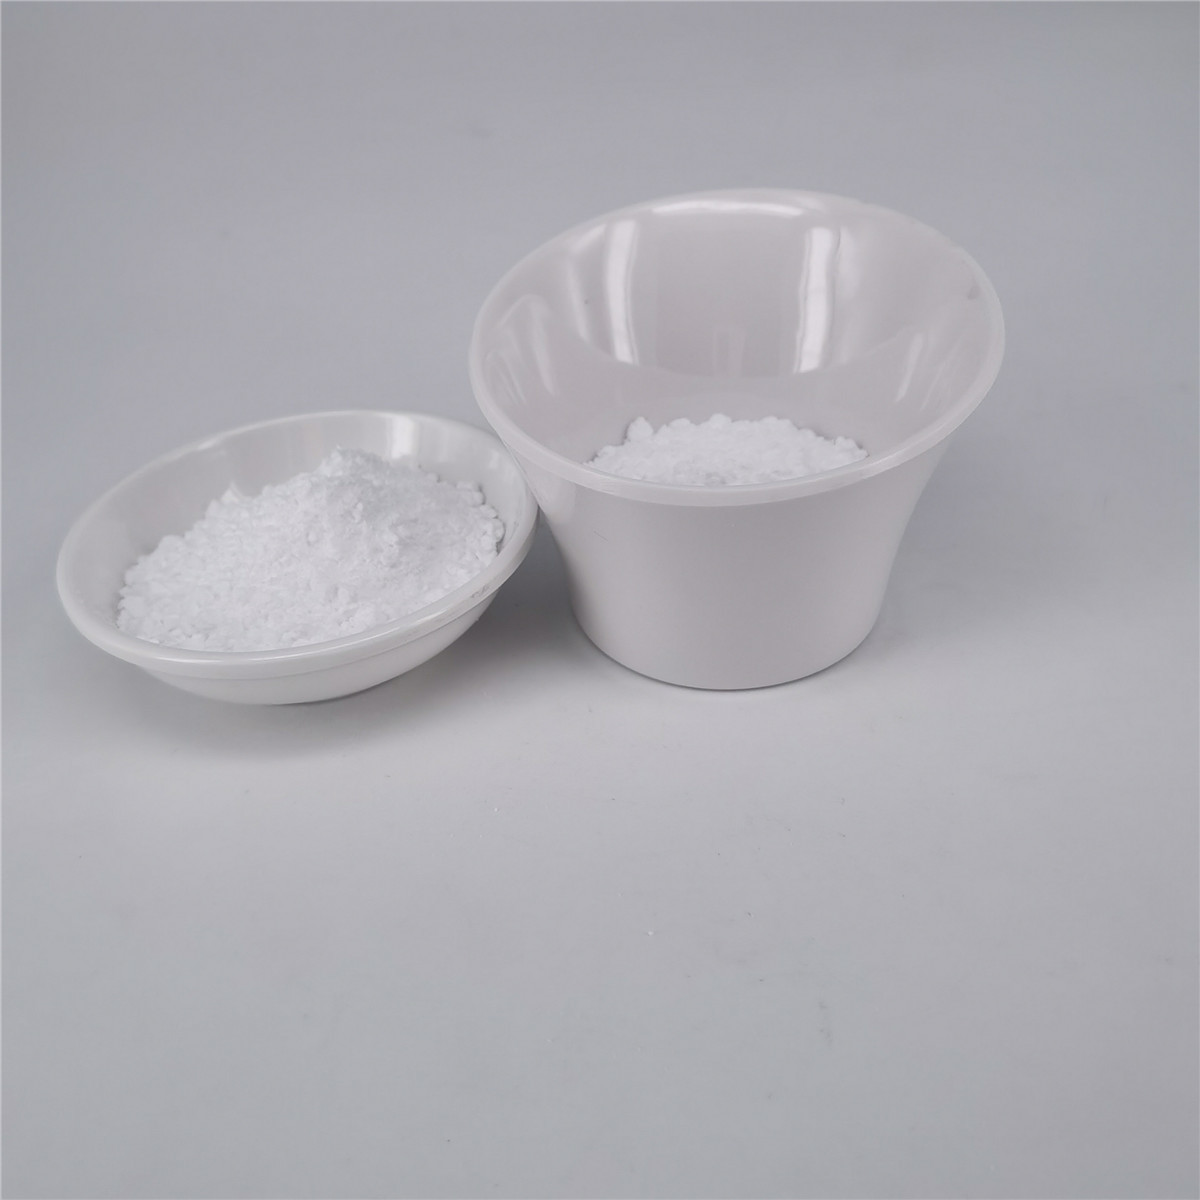 Best White Crystal EGT Ergothioneine In Skin Care 0.1% wholesale